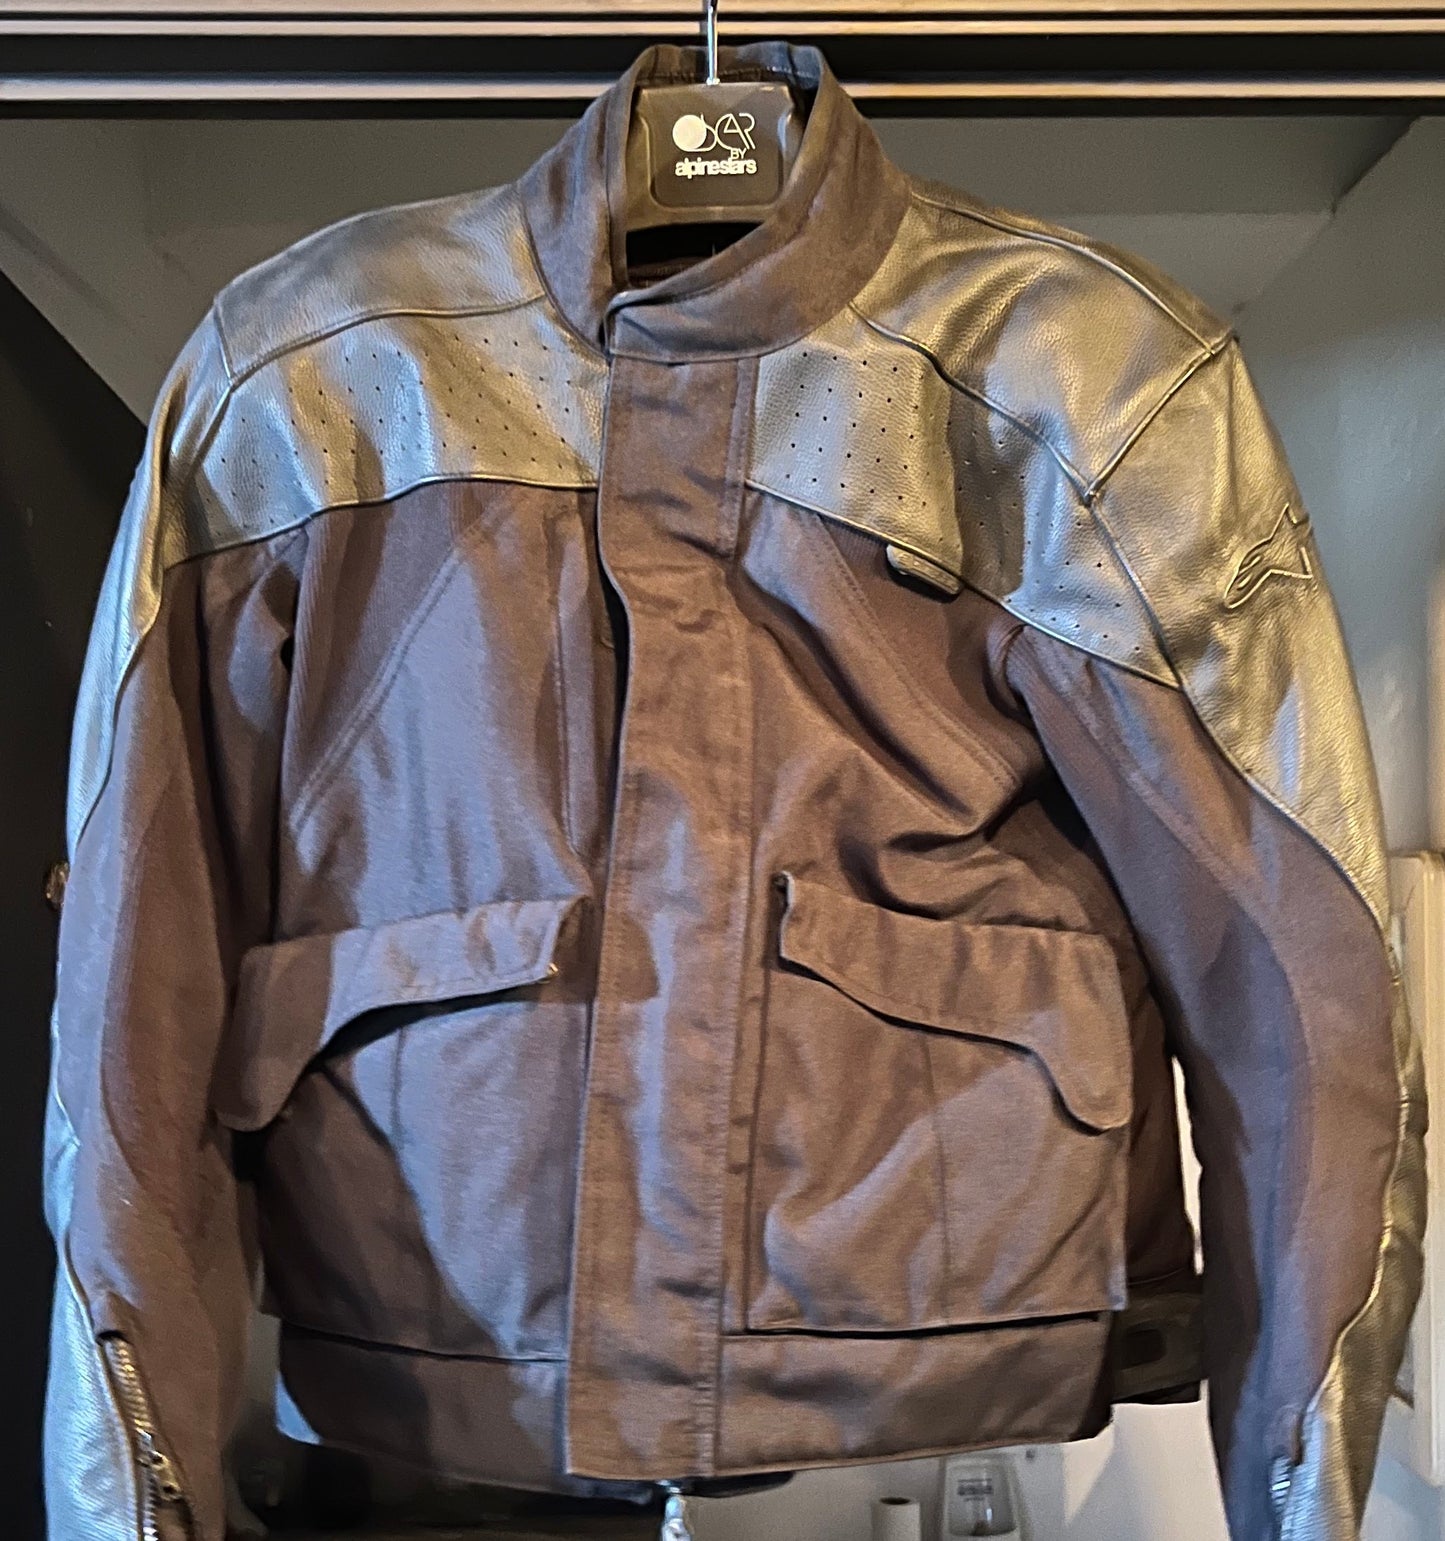 Alpinestars leather/ cotton jacket